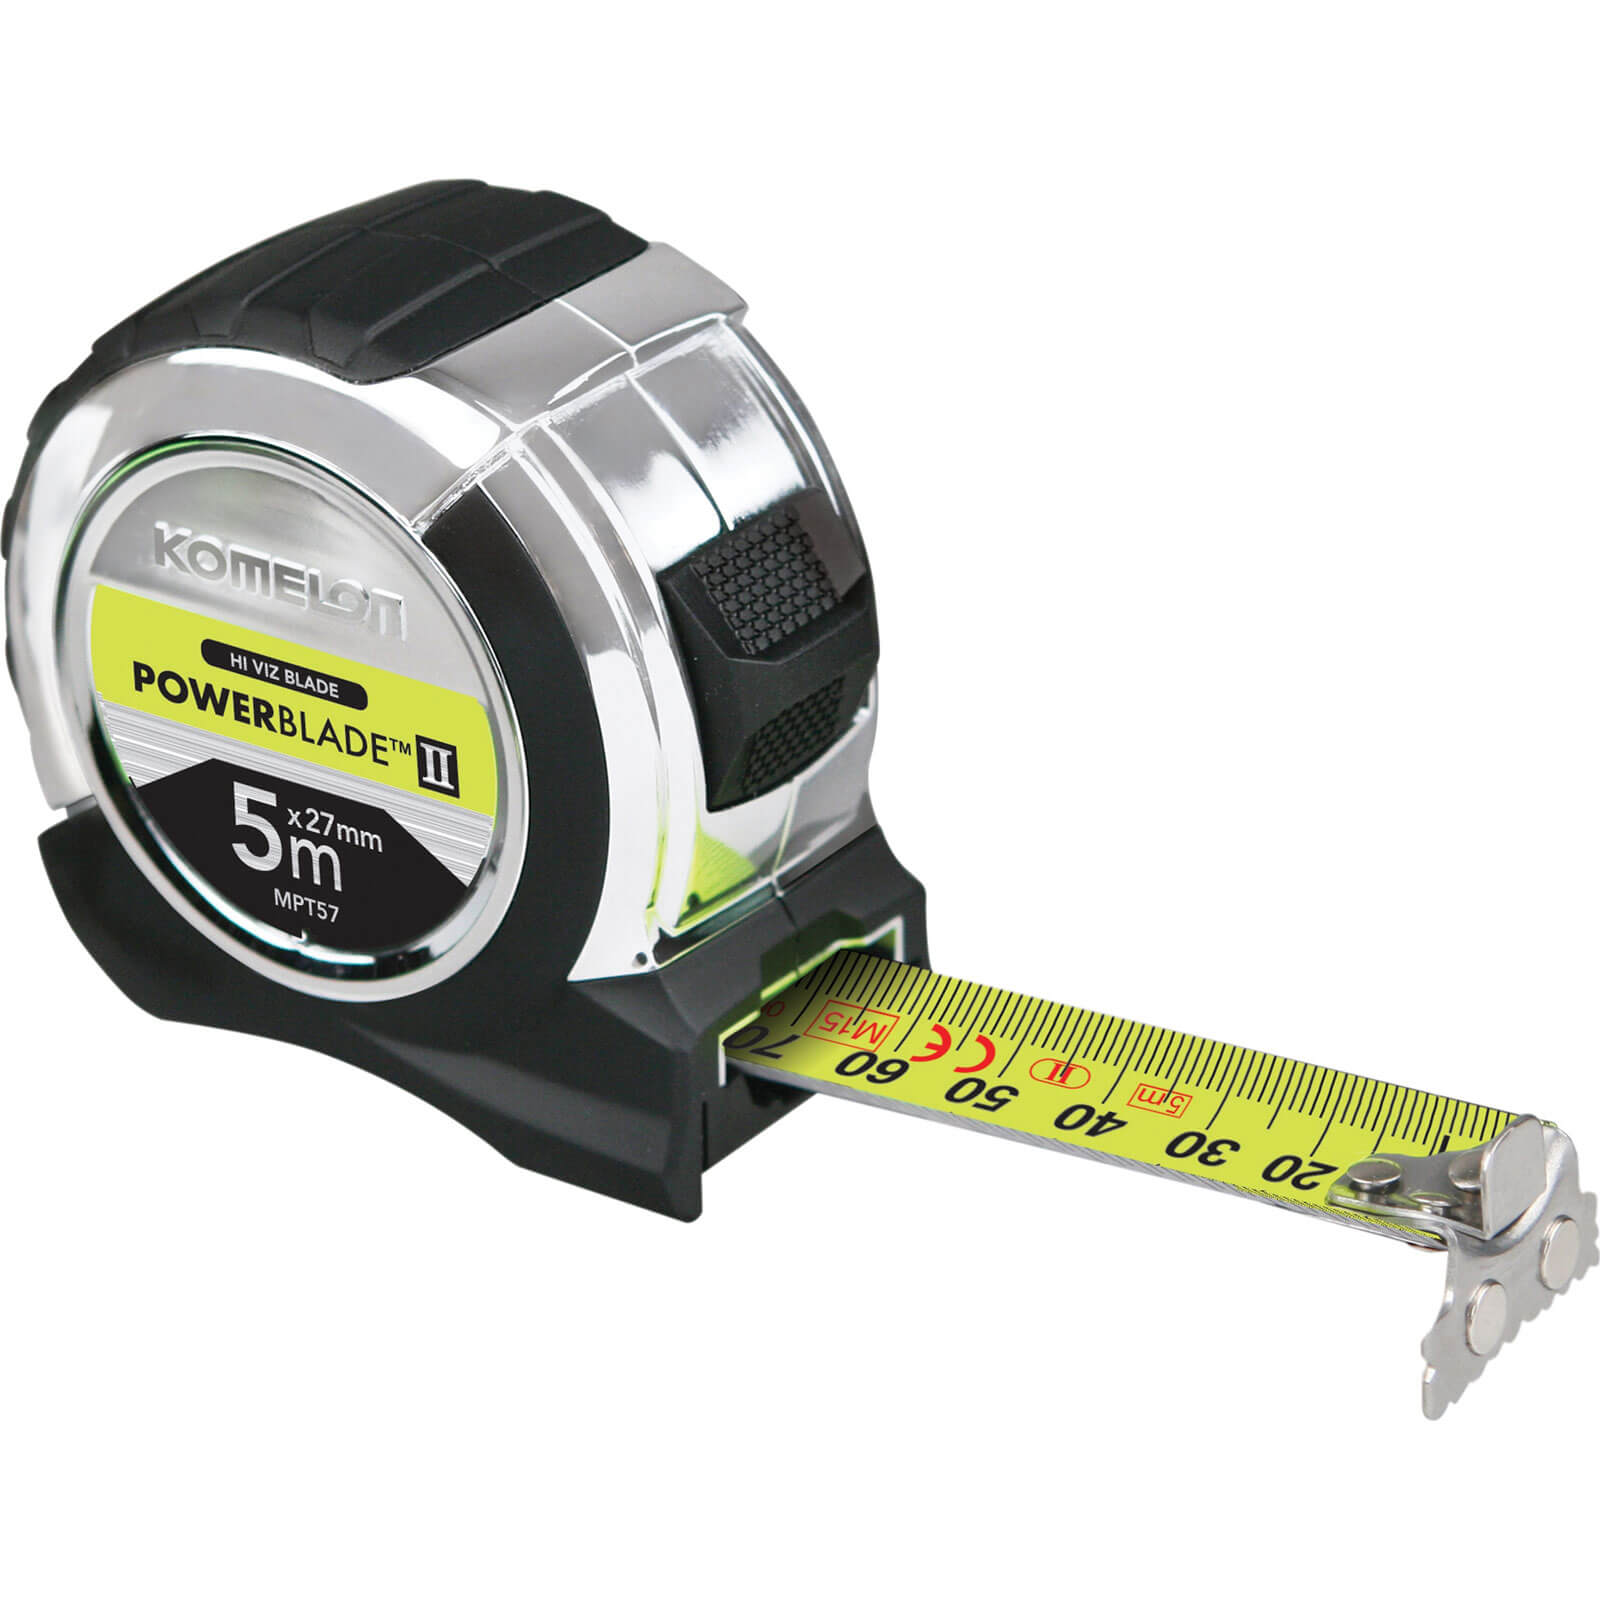 KOMELON Key Master Chain Ring Mini Tape Measure Rulers Measuring Tool Holder 2M 